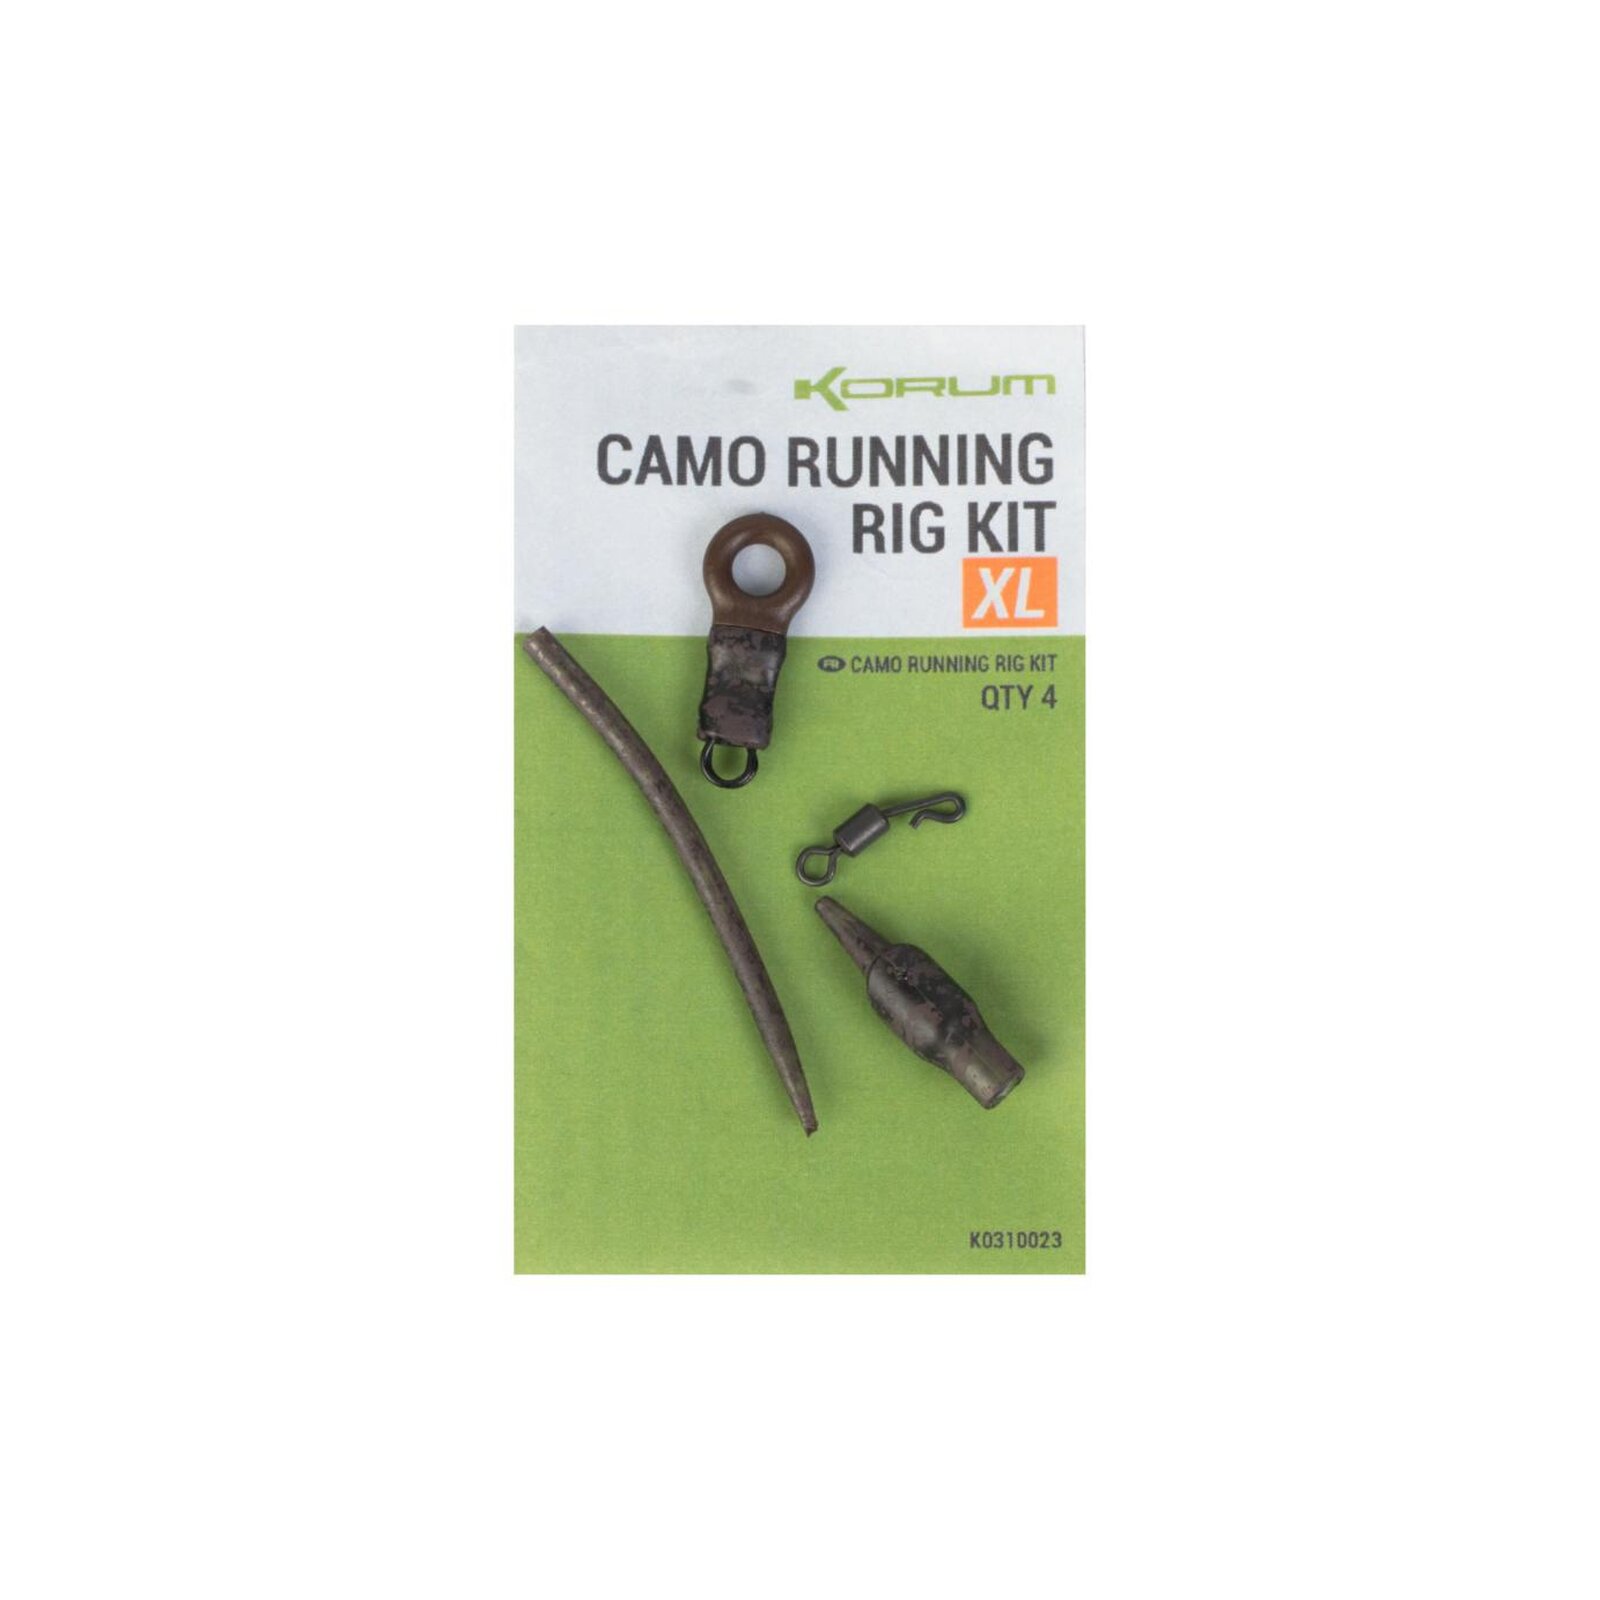 Korum Camo Running Rig Kit XL